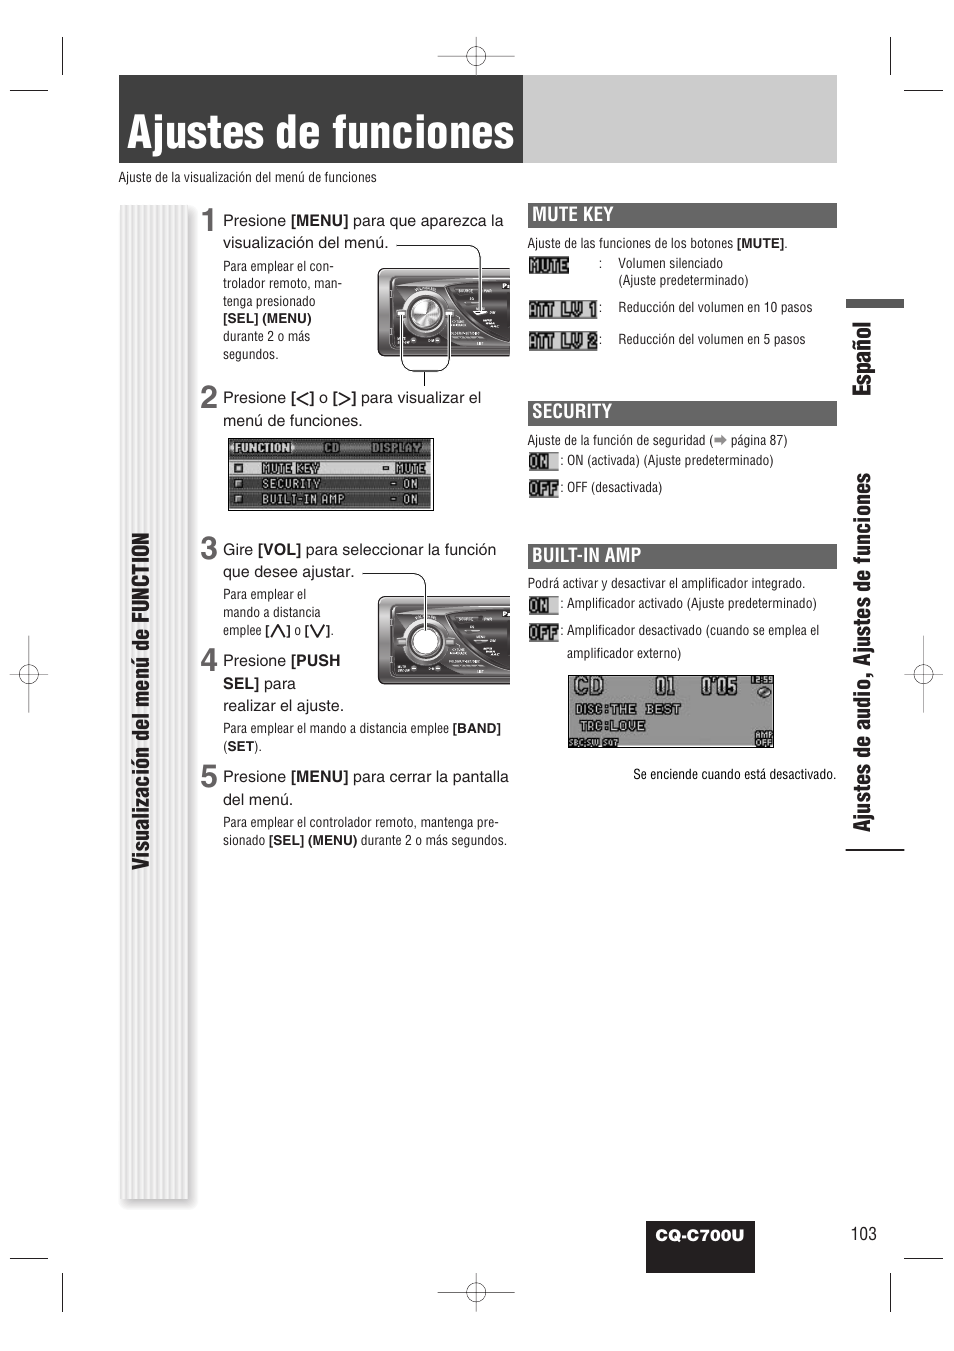 Ajustes de funciones (ajuste de seguridad, etc.), Ajustes de funciones, Español | Panasonic CQ-C700U Manual del usuario | Página 27 / 38